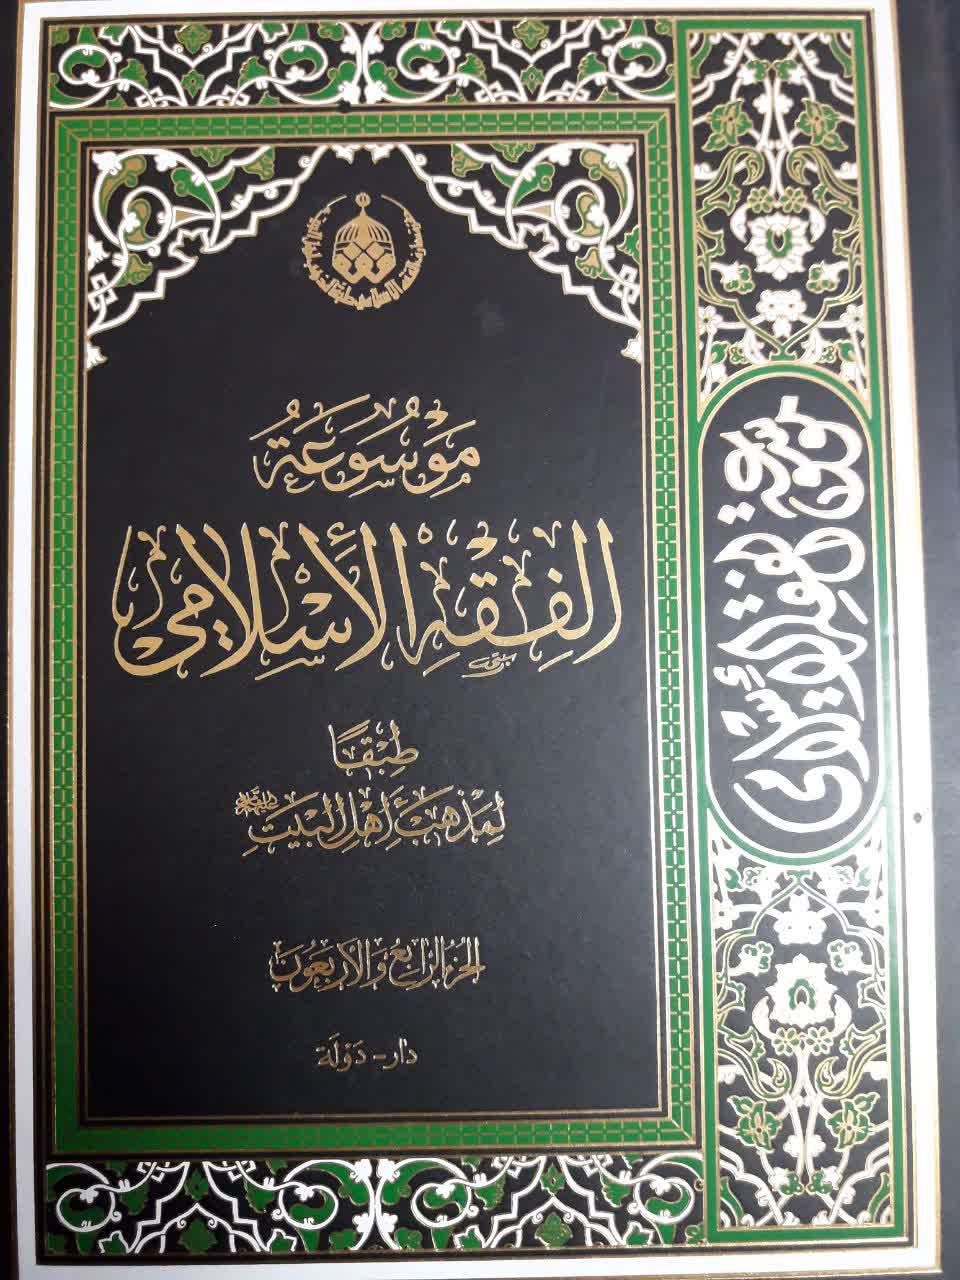 جلد 44 کتاب موسوعة الفقه الاسلامی طبقا لمذهب اهل البیت منتشر شد